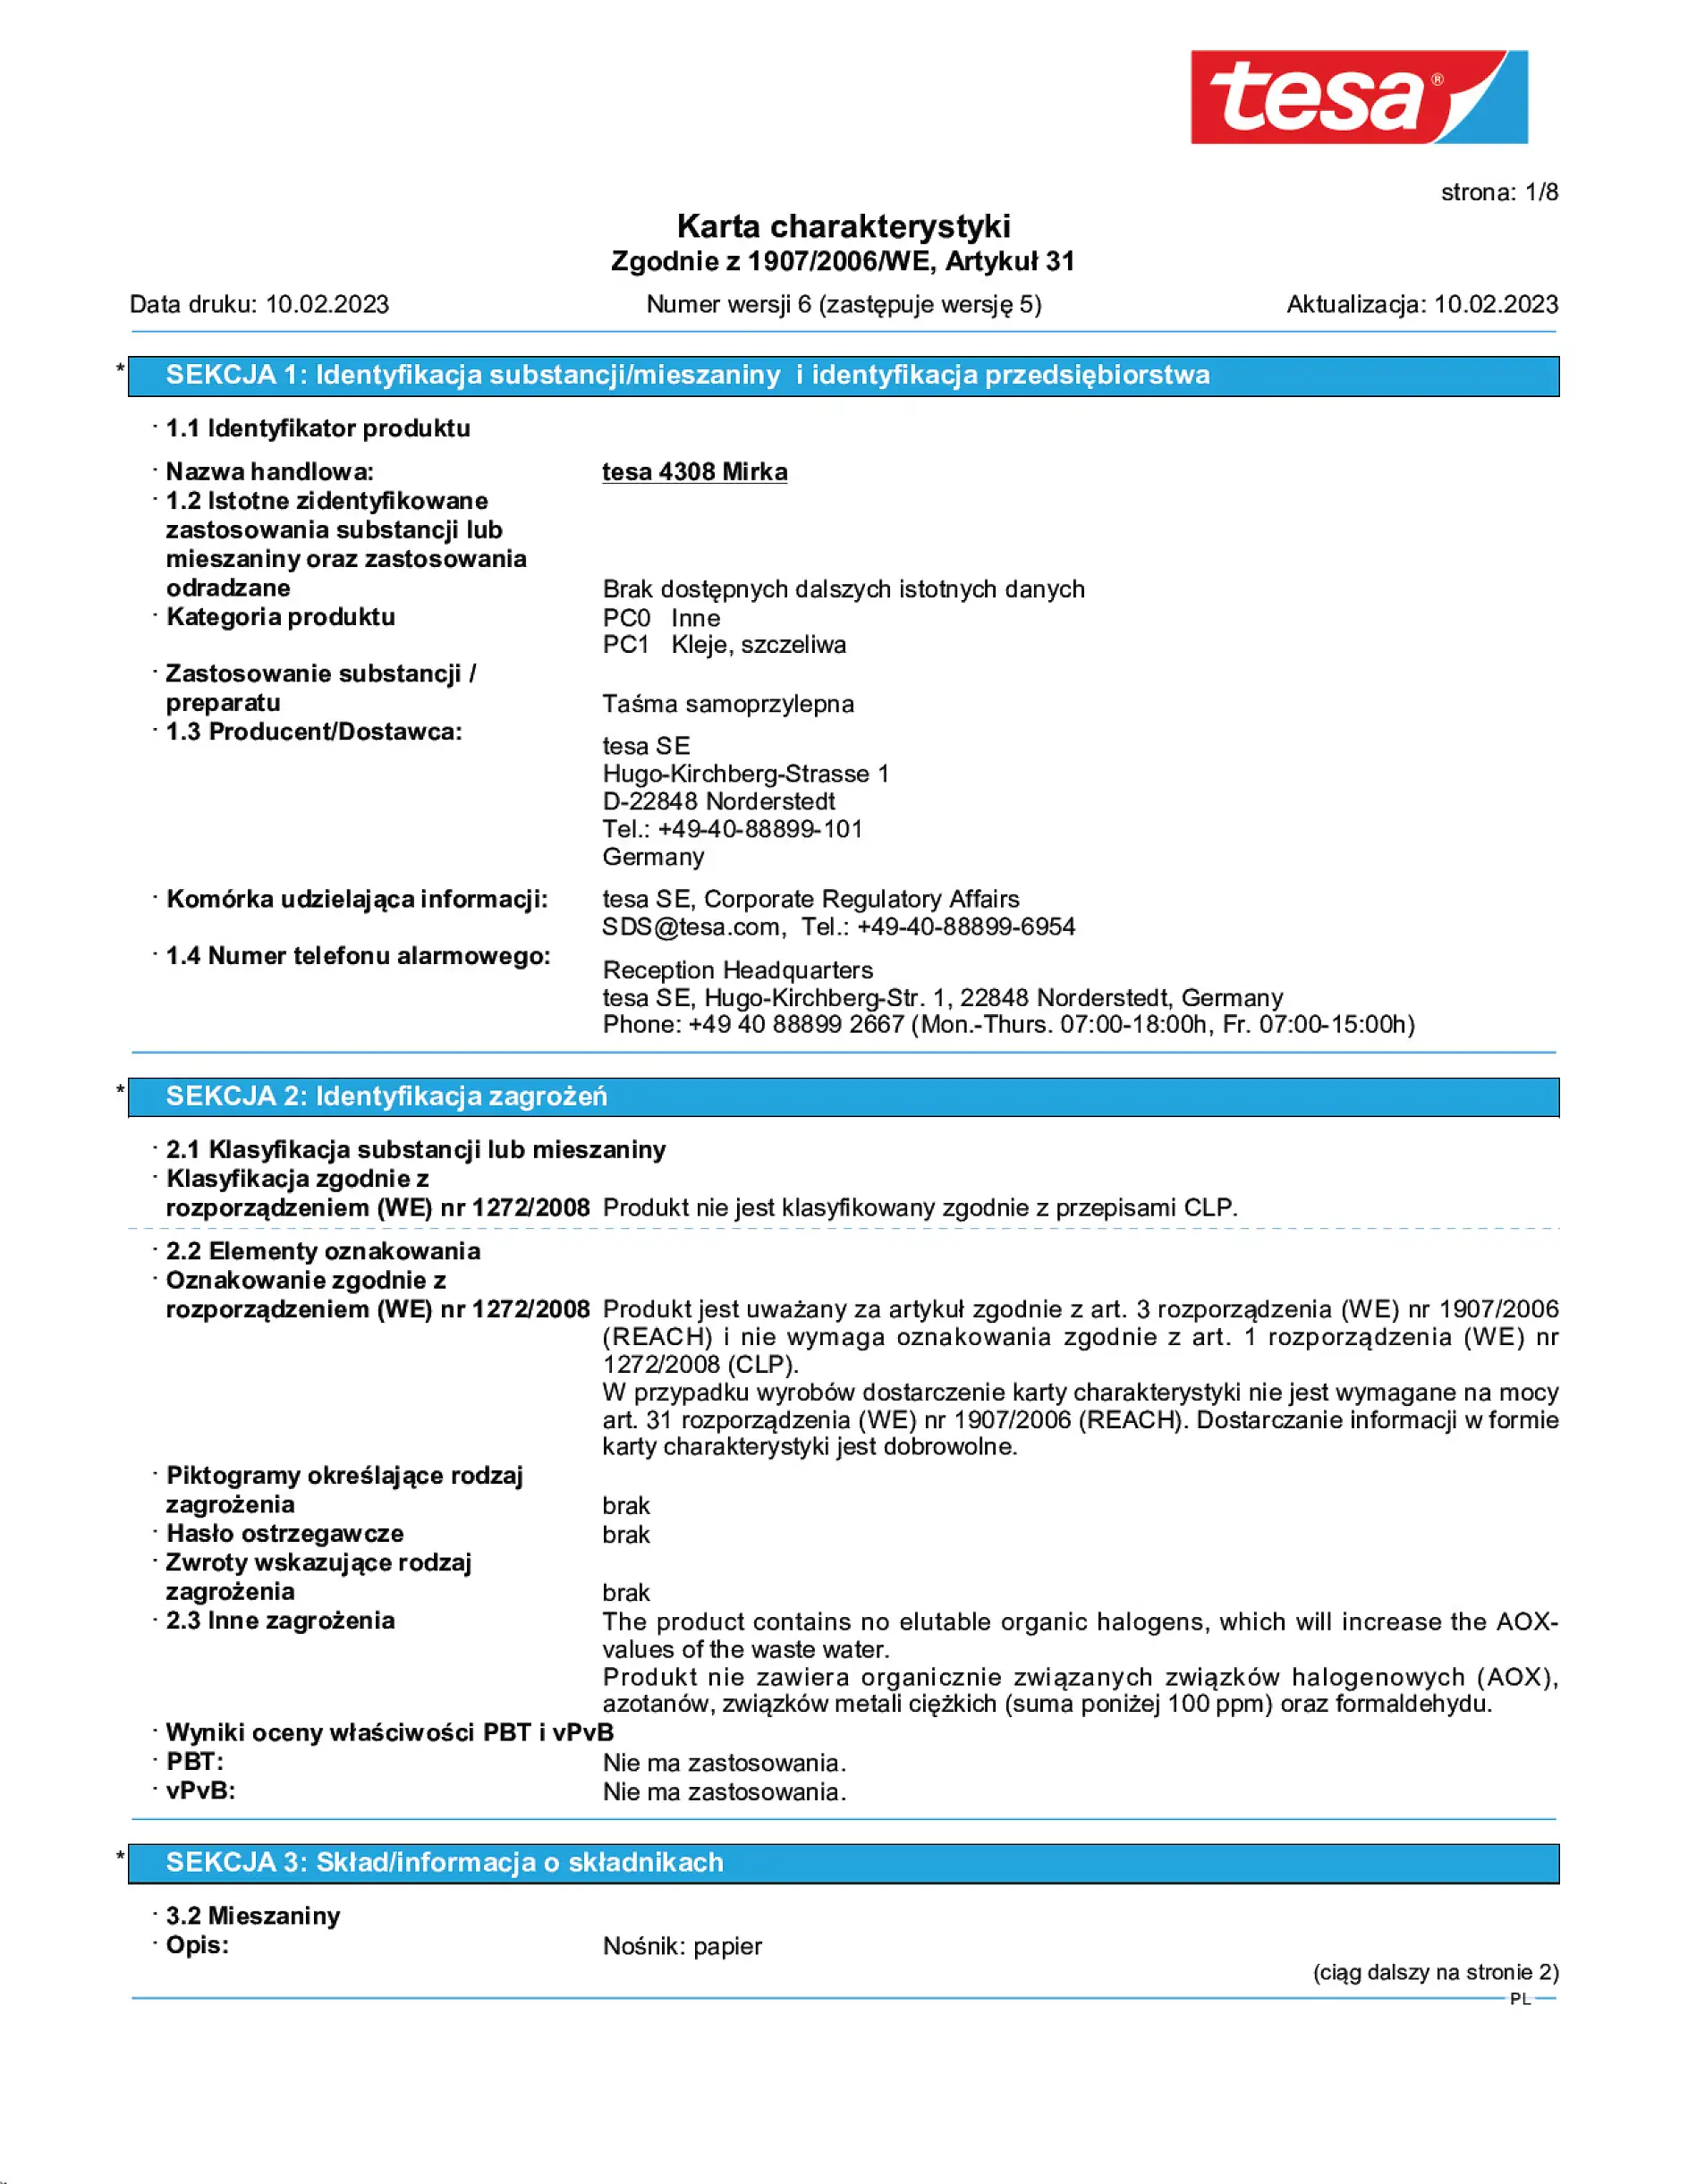 Safety data sheet_tesa® 04308_pl-PL_v6